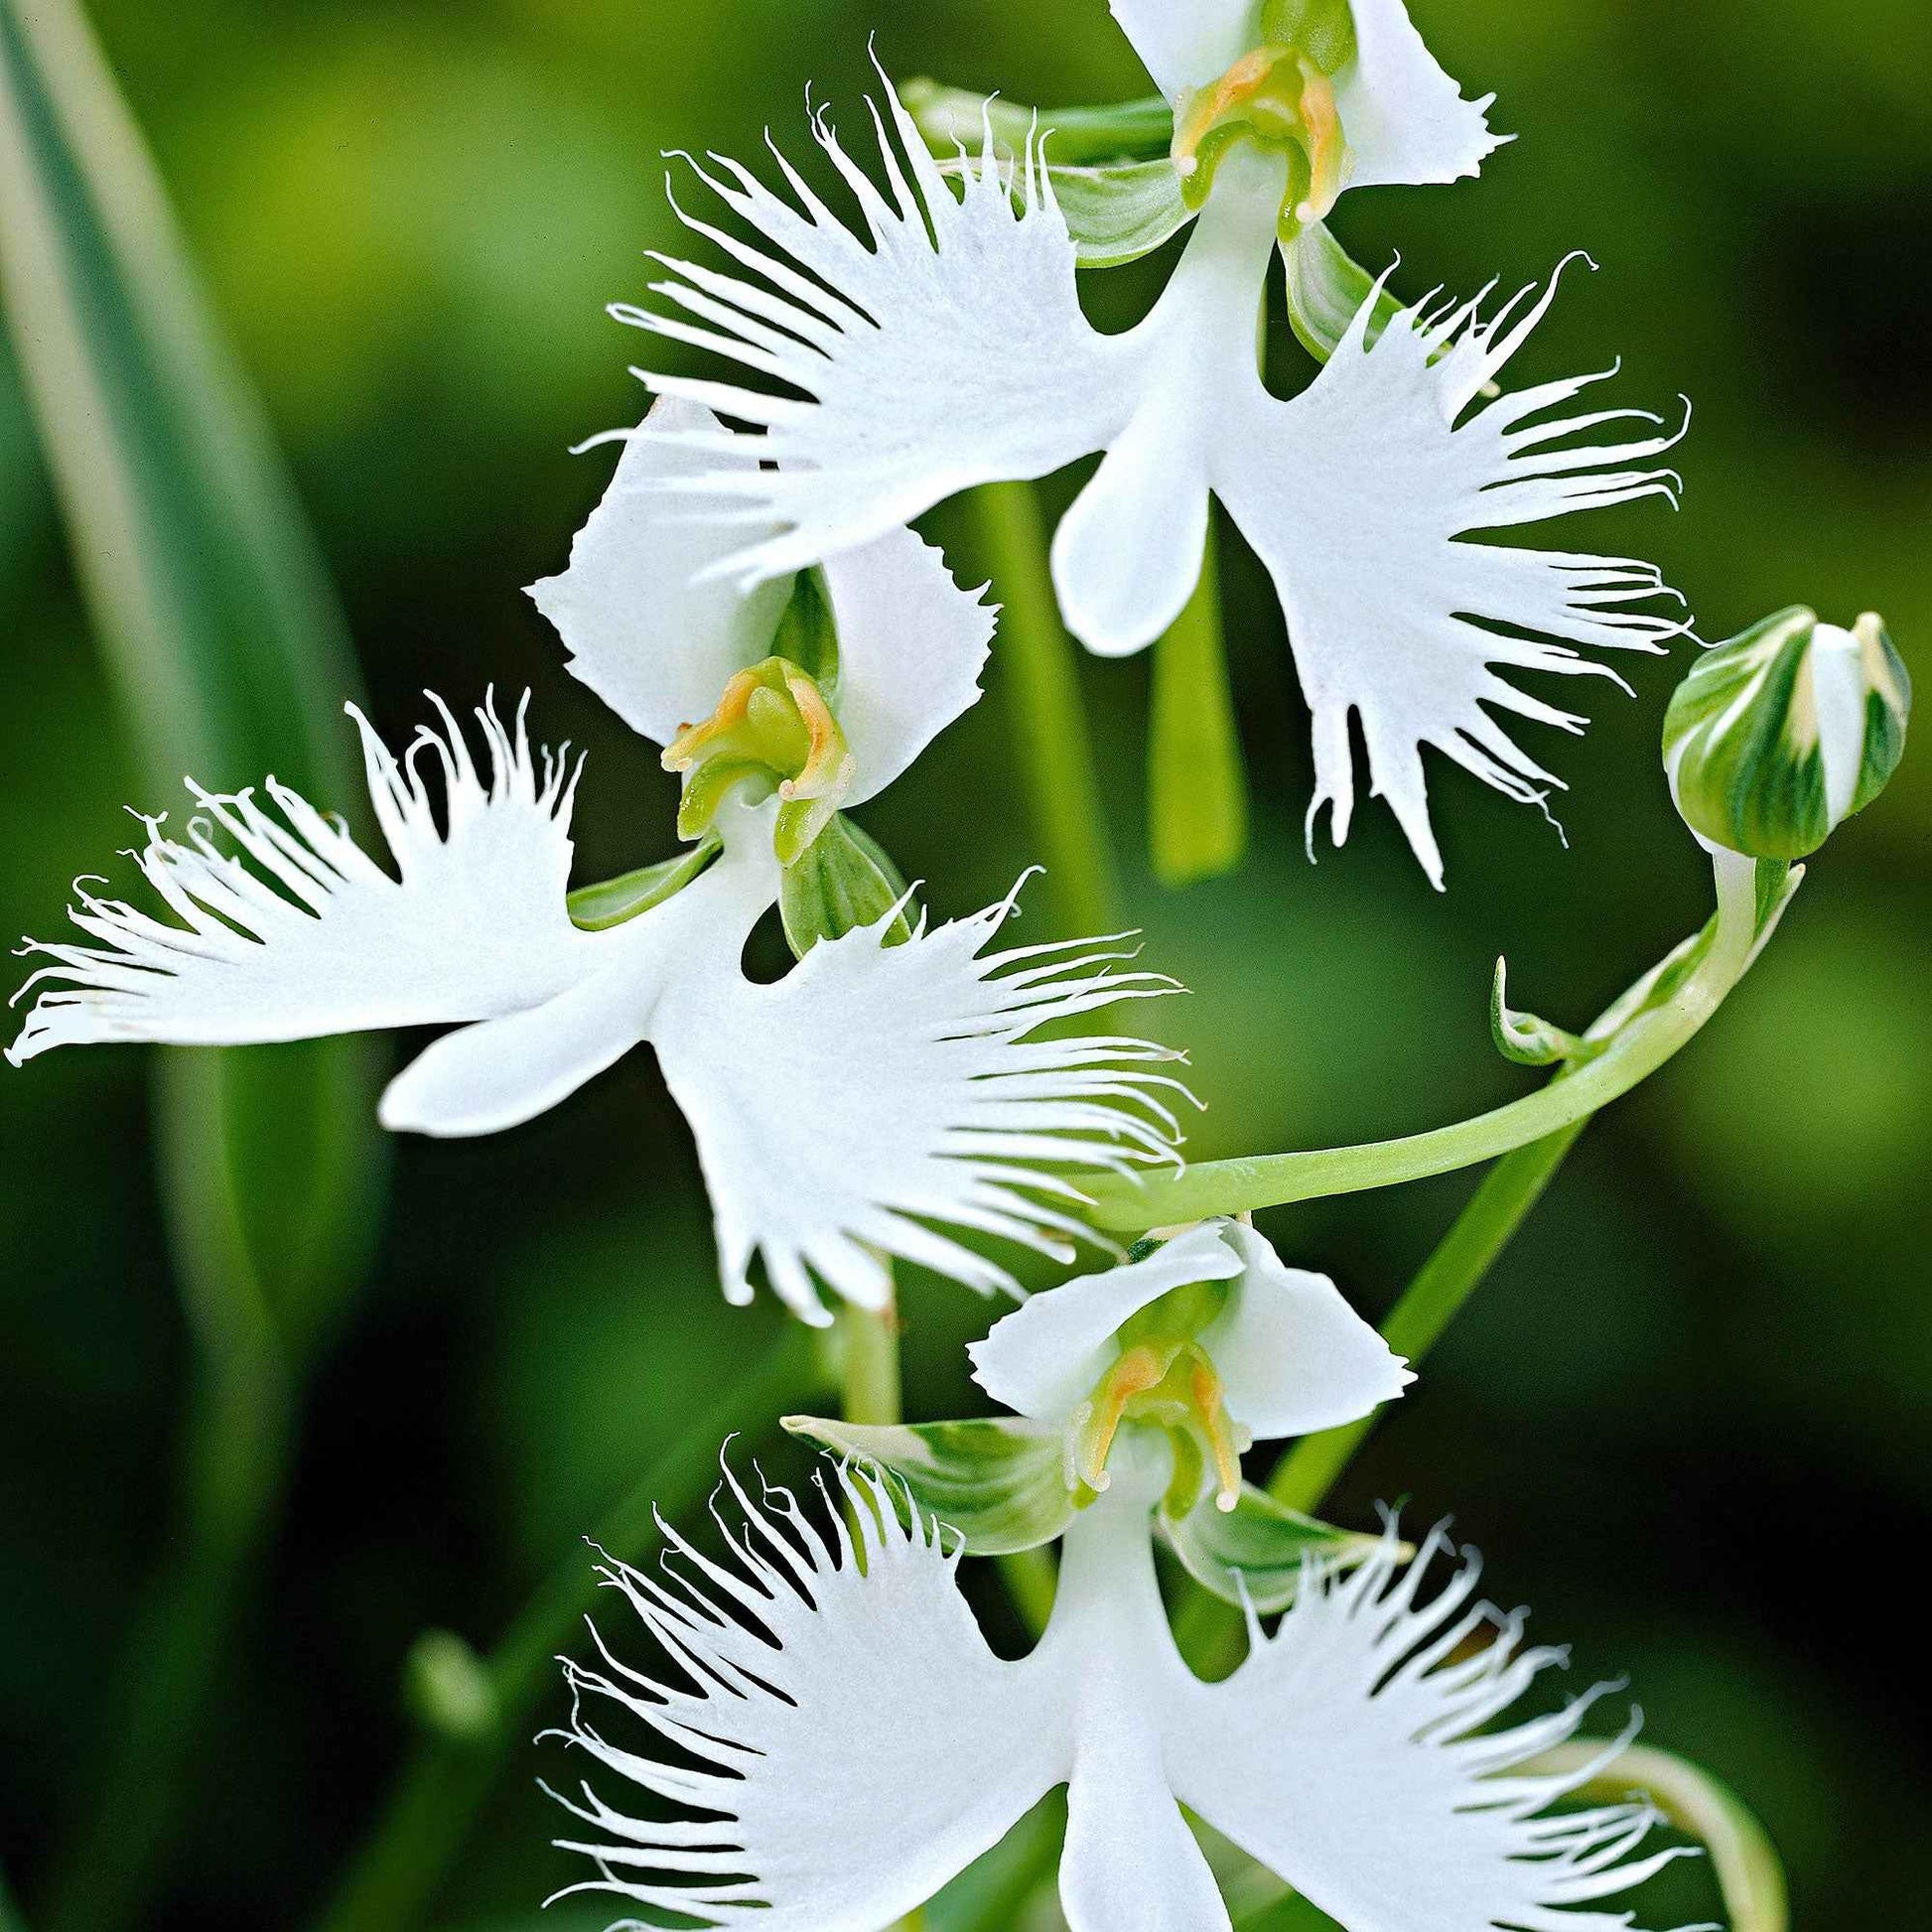 Reiherorchidee (x2) - Habenaria radiata - Blumenzwiebeln